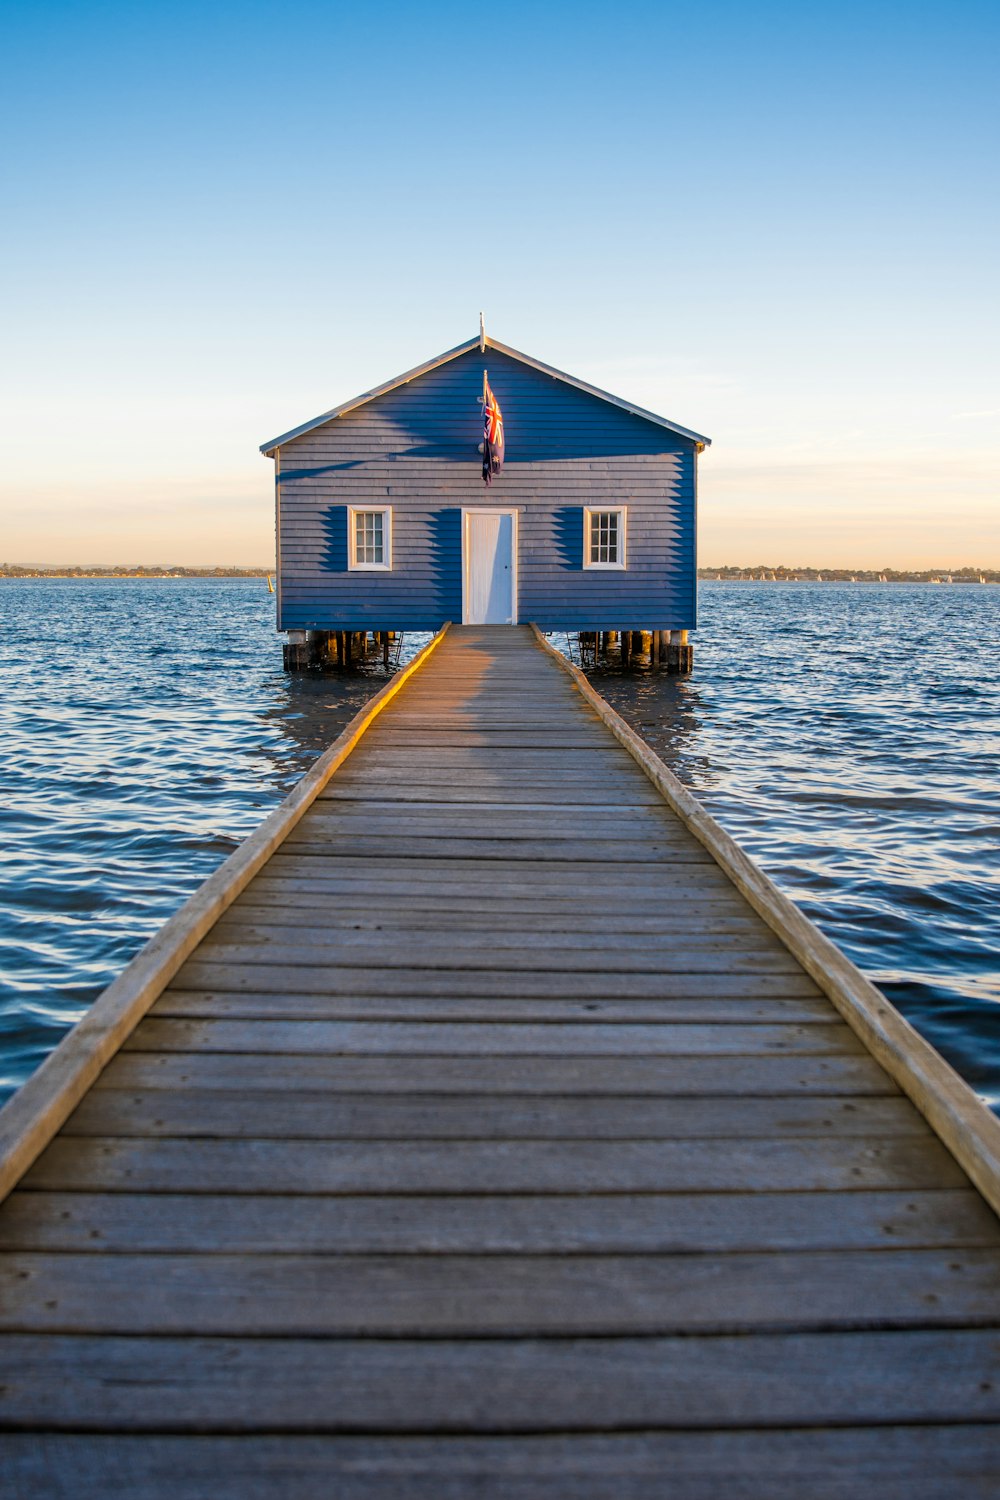 昼間の澄み切った青空の下、海に浮かぶ青と白の木造家屋